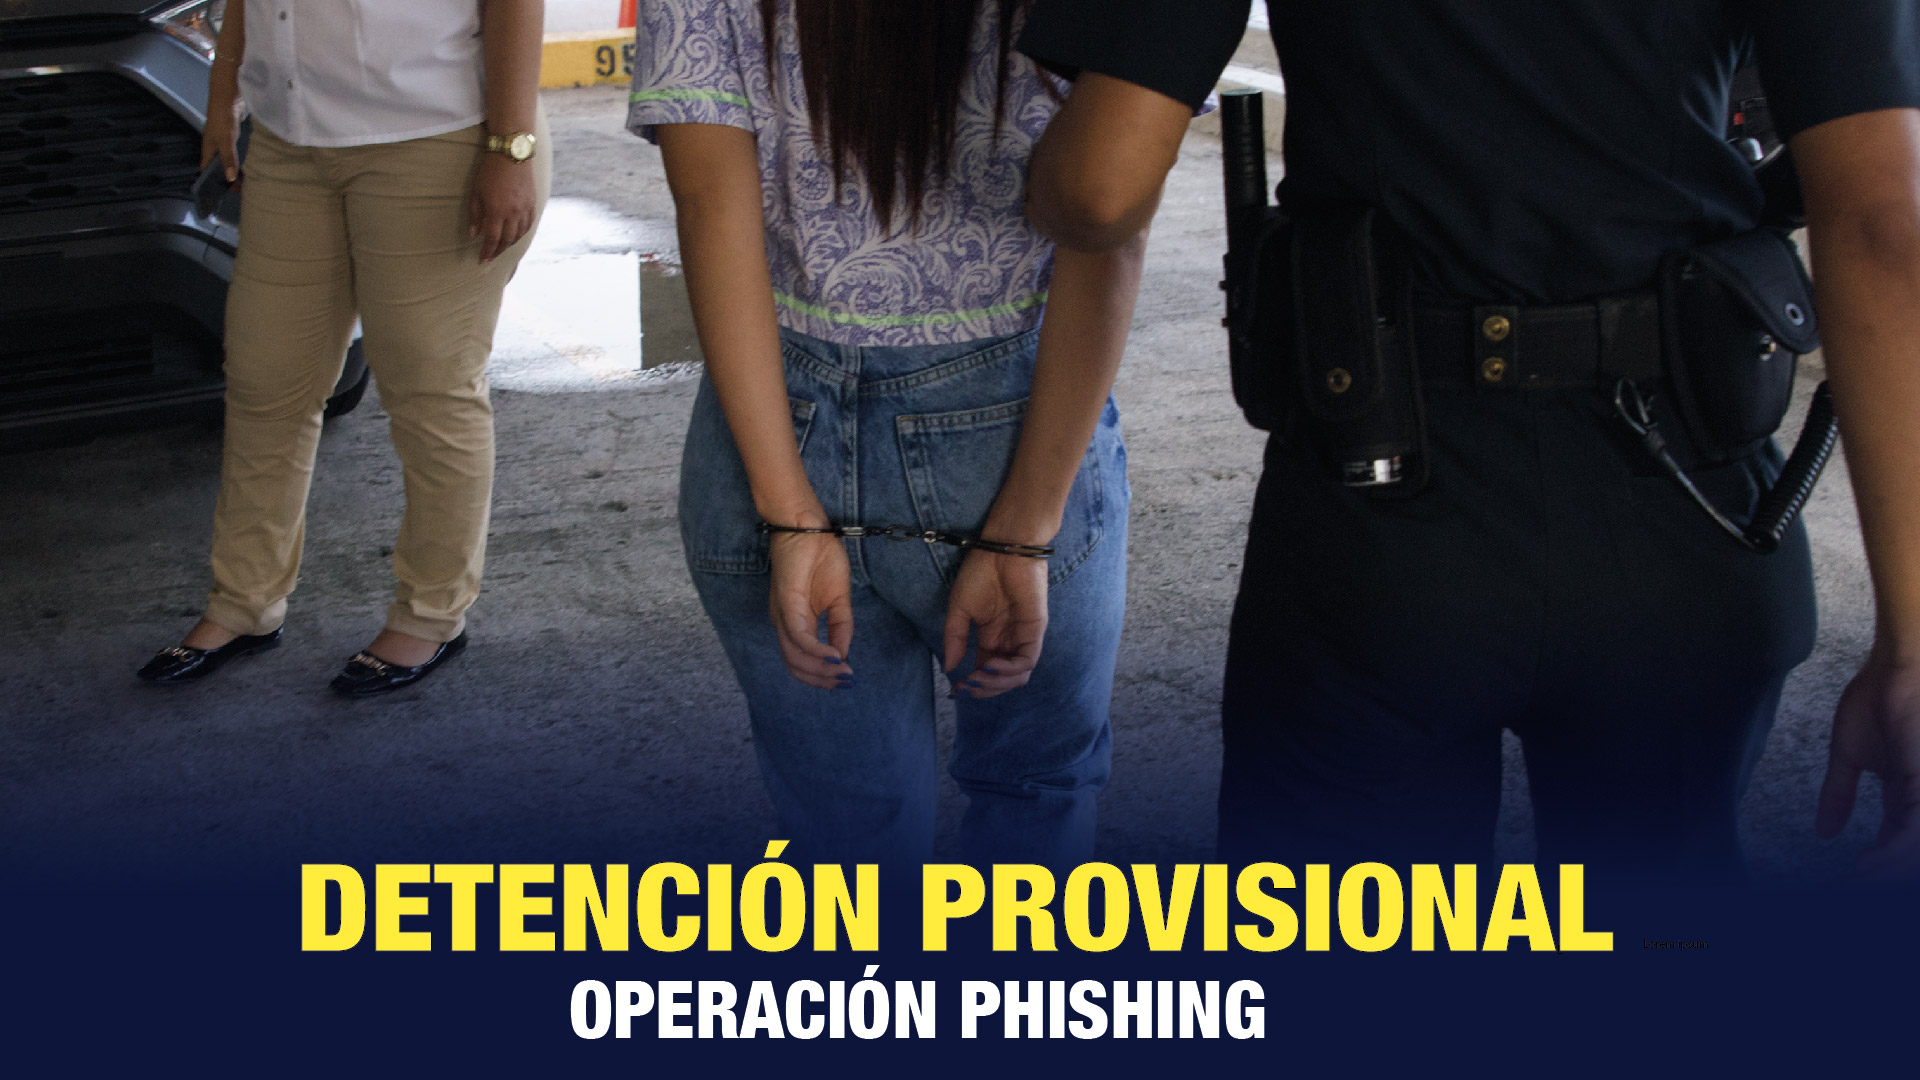 Decretan la detención provisional de una mujer aprehendida en operación “Phishing”